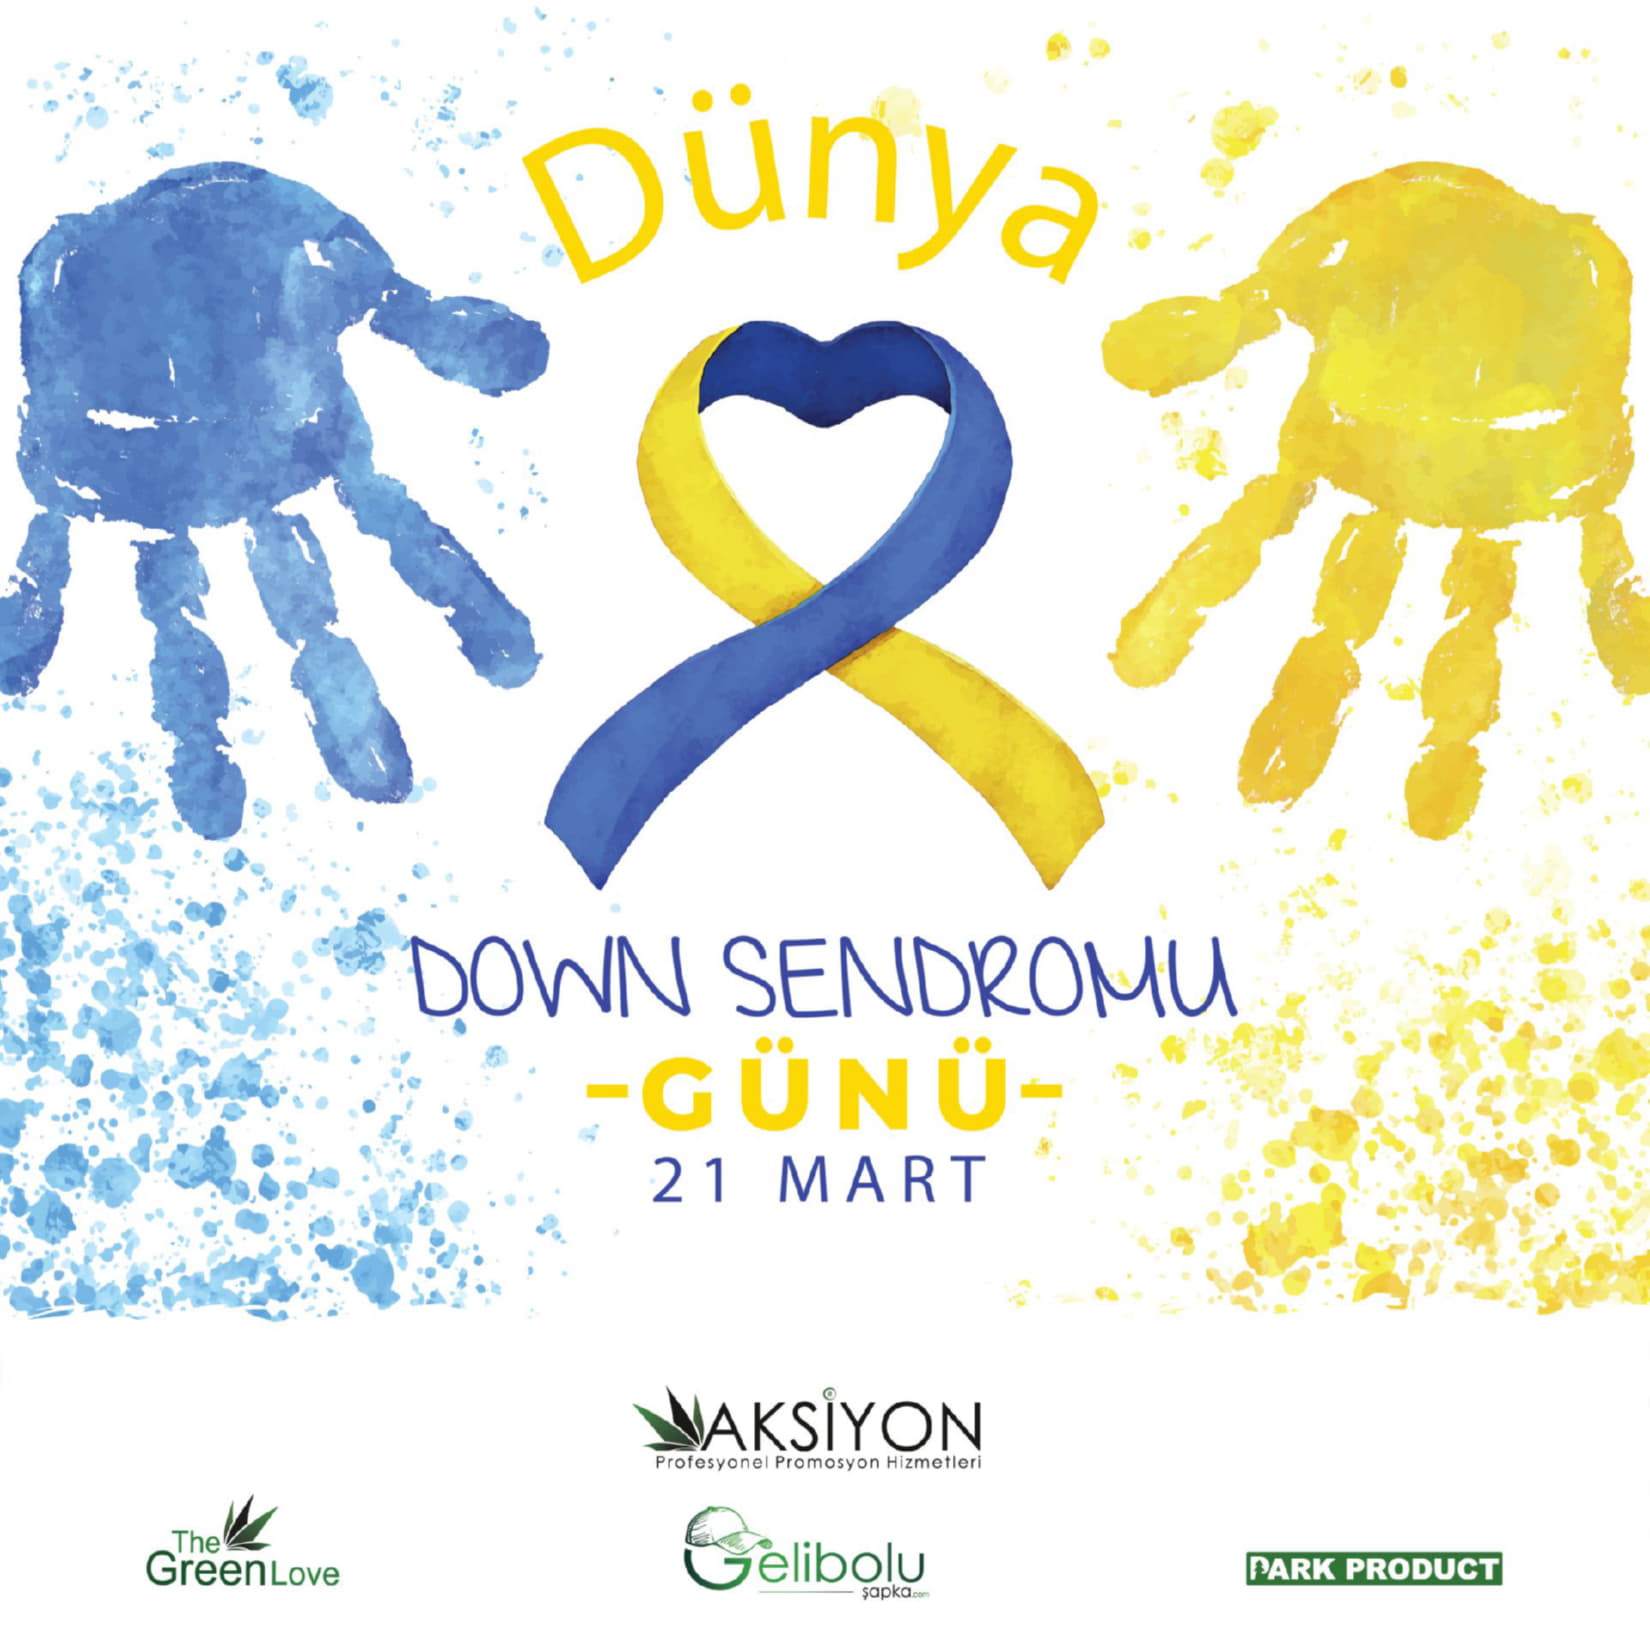 21 Mart Dünya Down Sendromu Farkındalık Günü